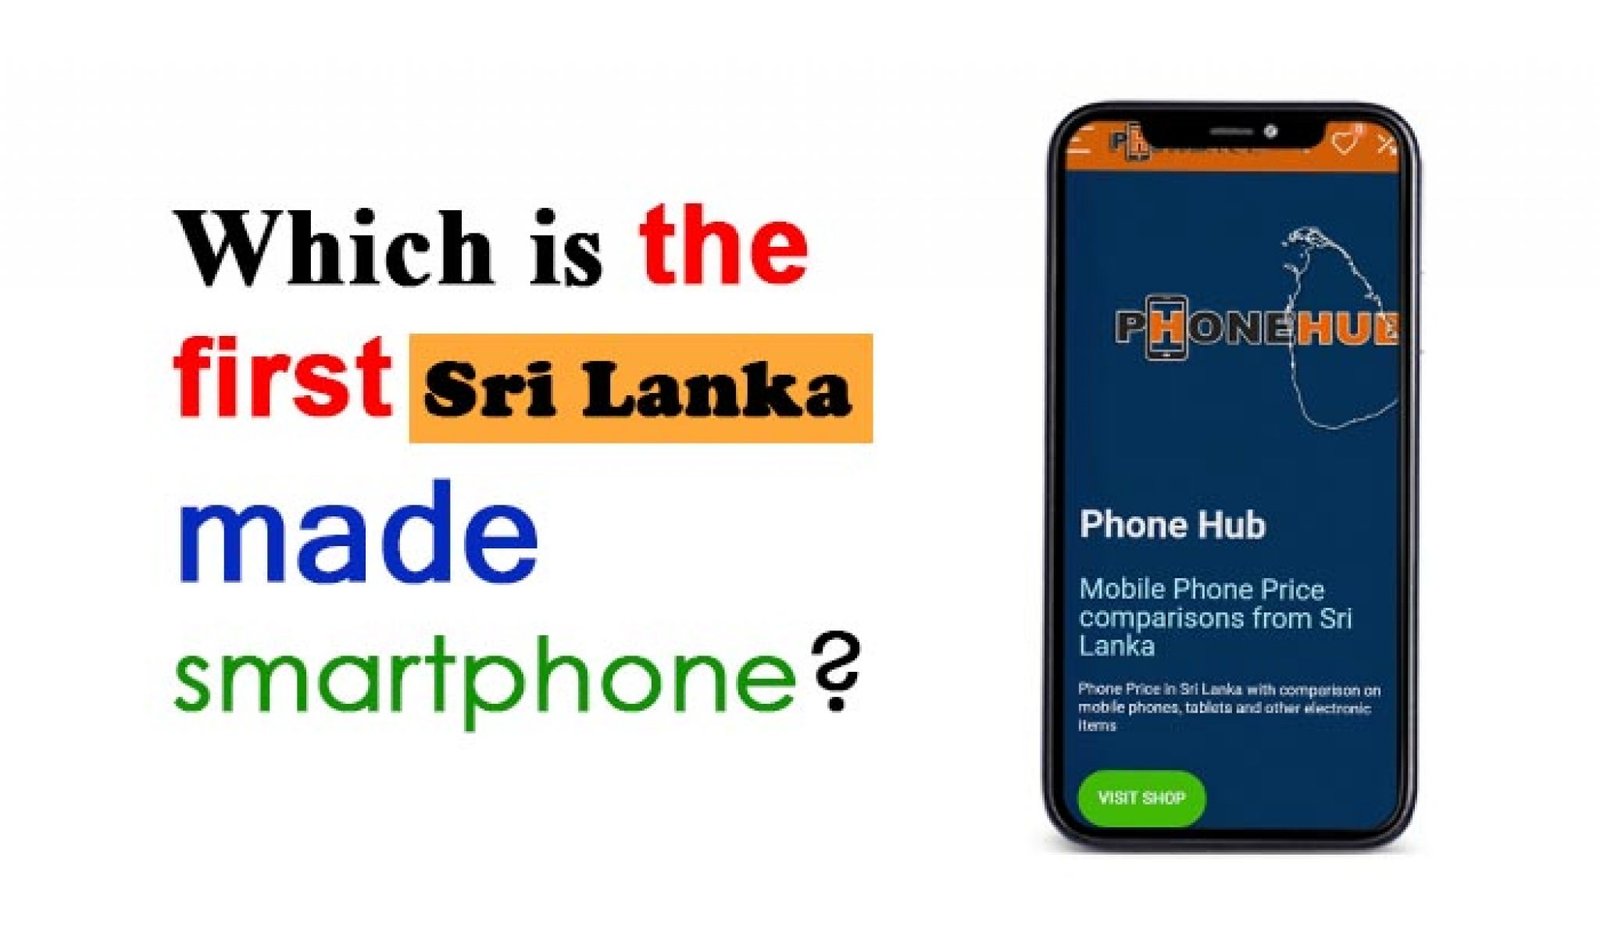 Sri Lanka made smartphone